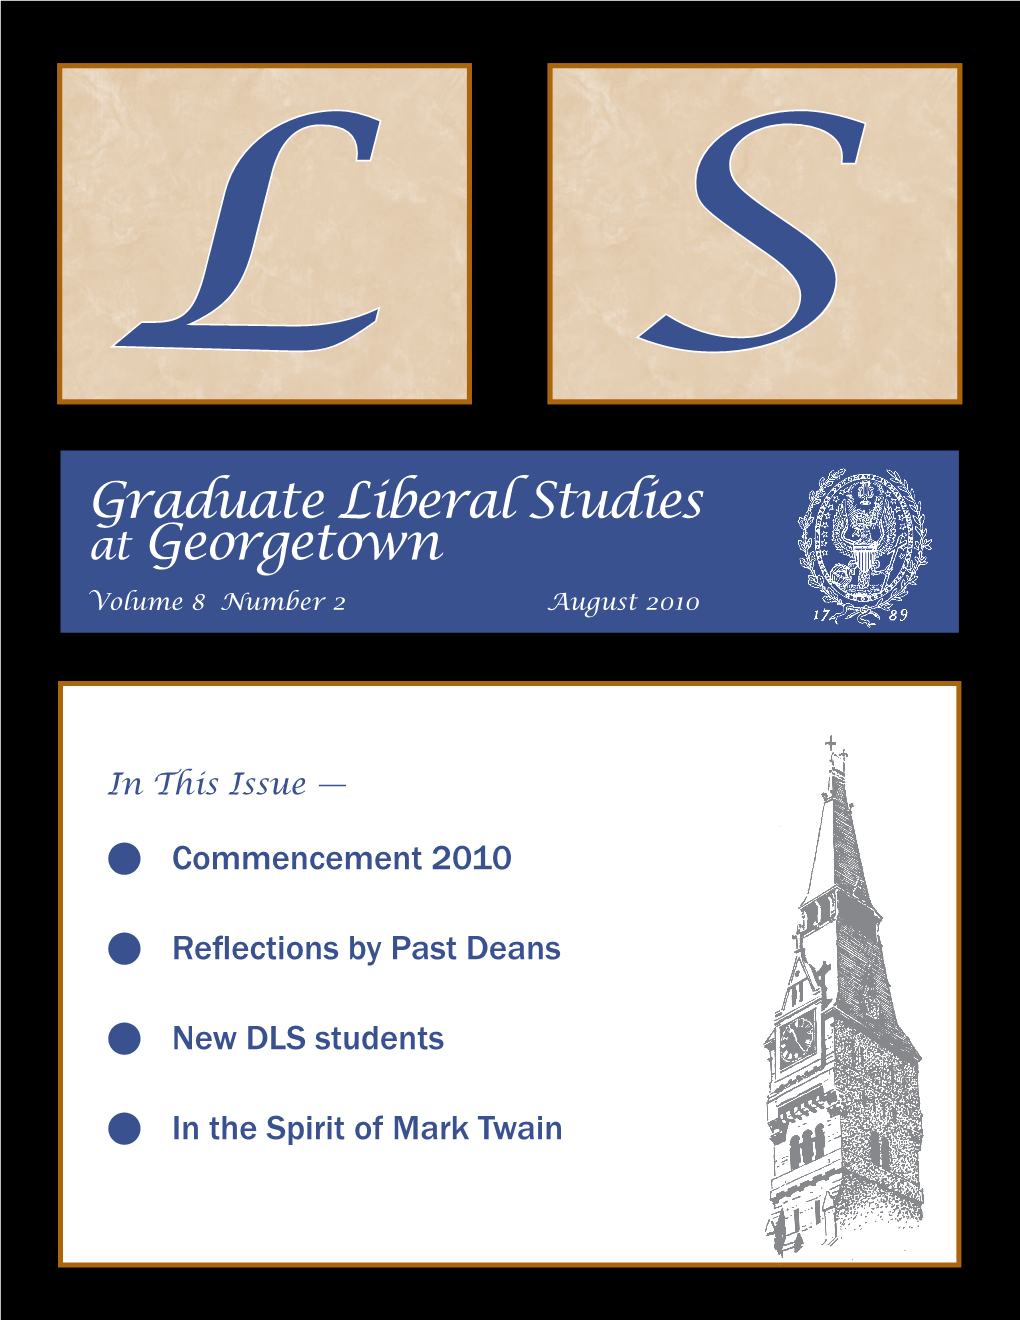 Graduate Liberal Studies at Georgetown Volume 8 Number 2 August 2010